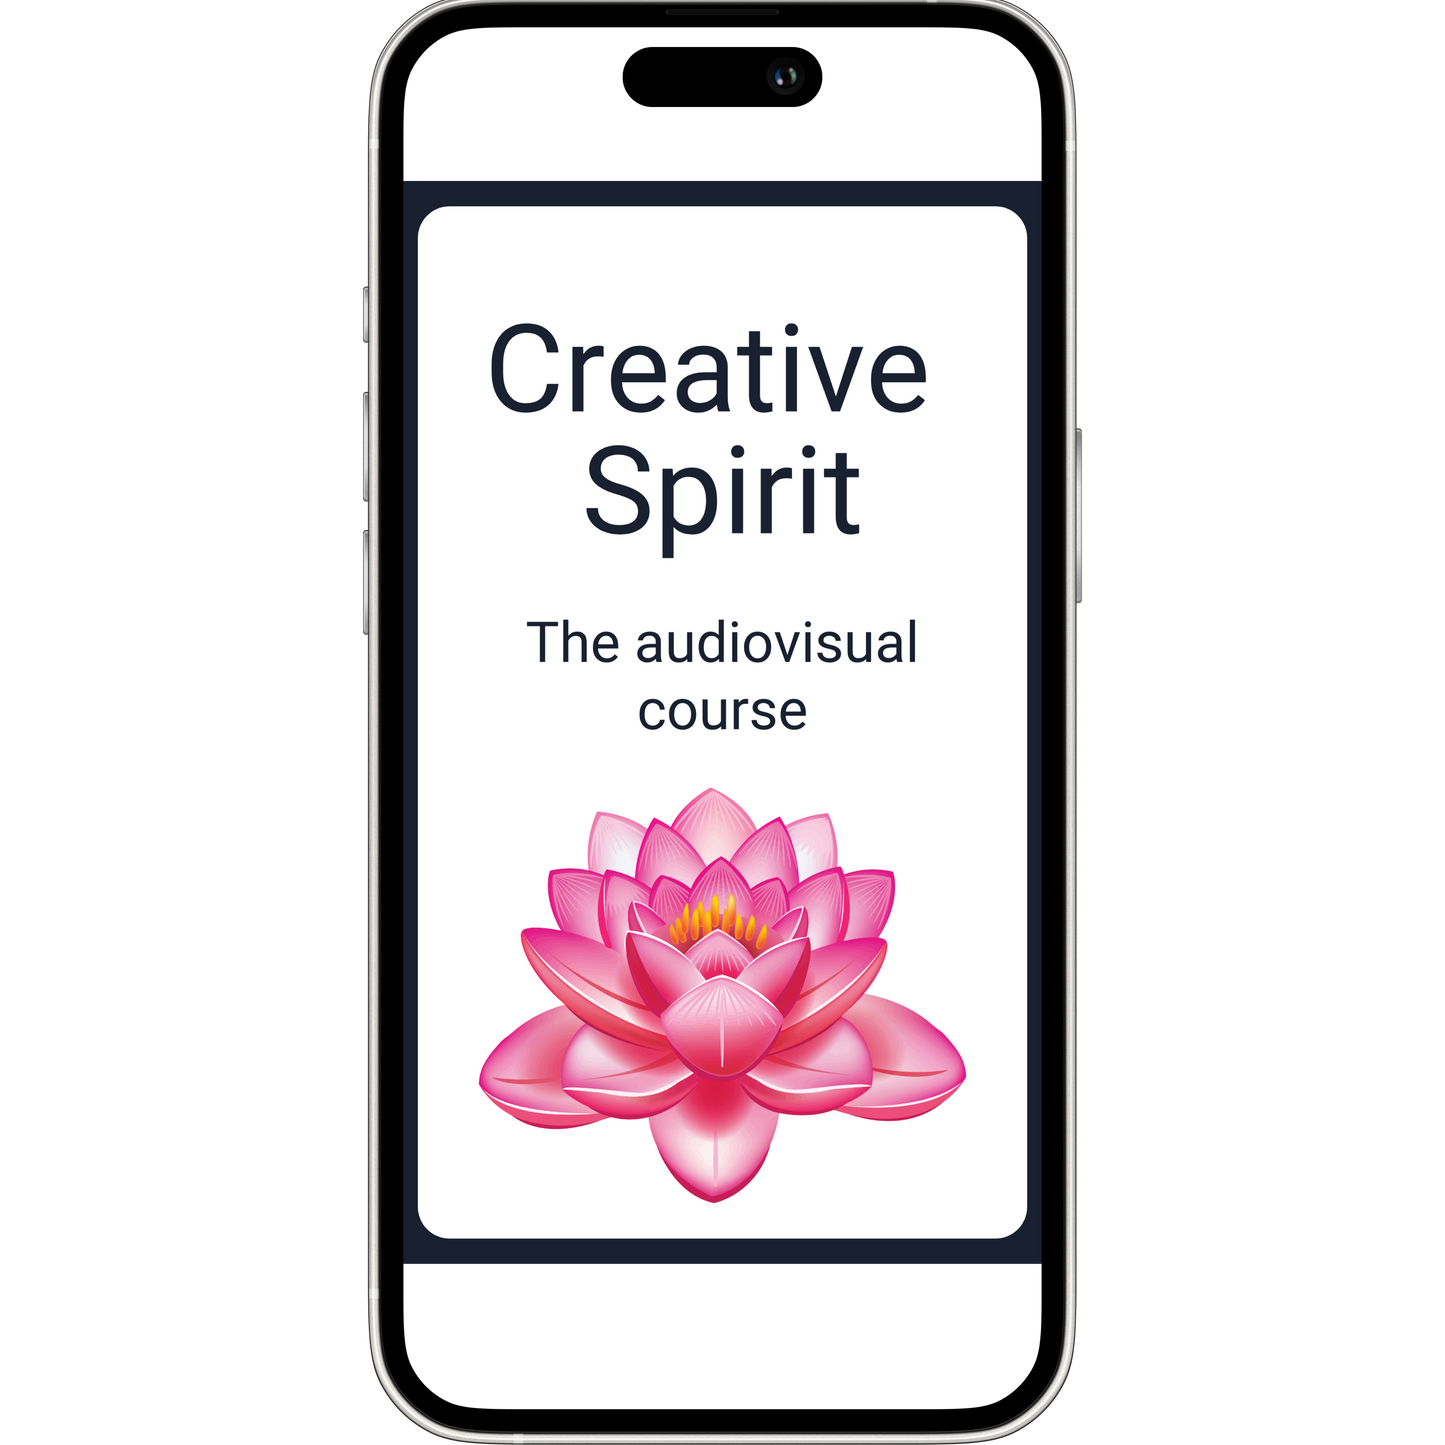 Creative Spirit: The course